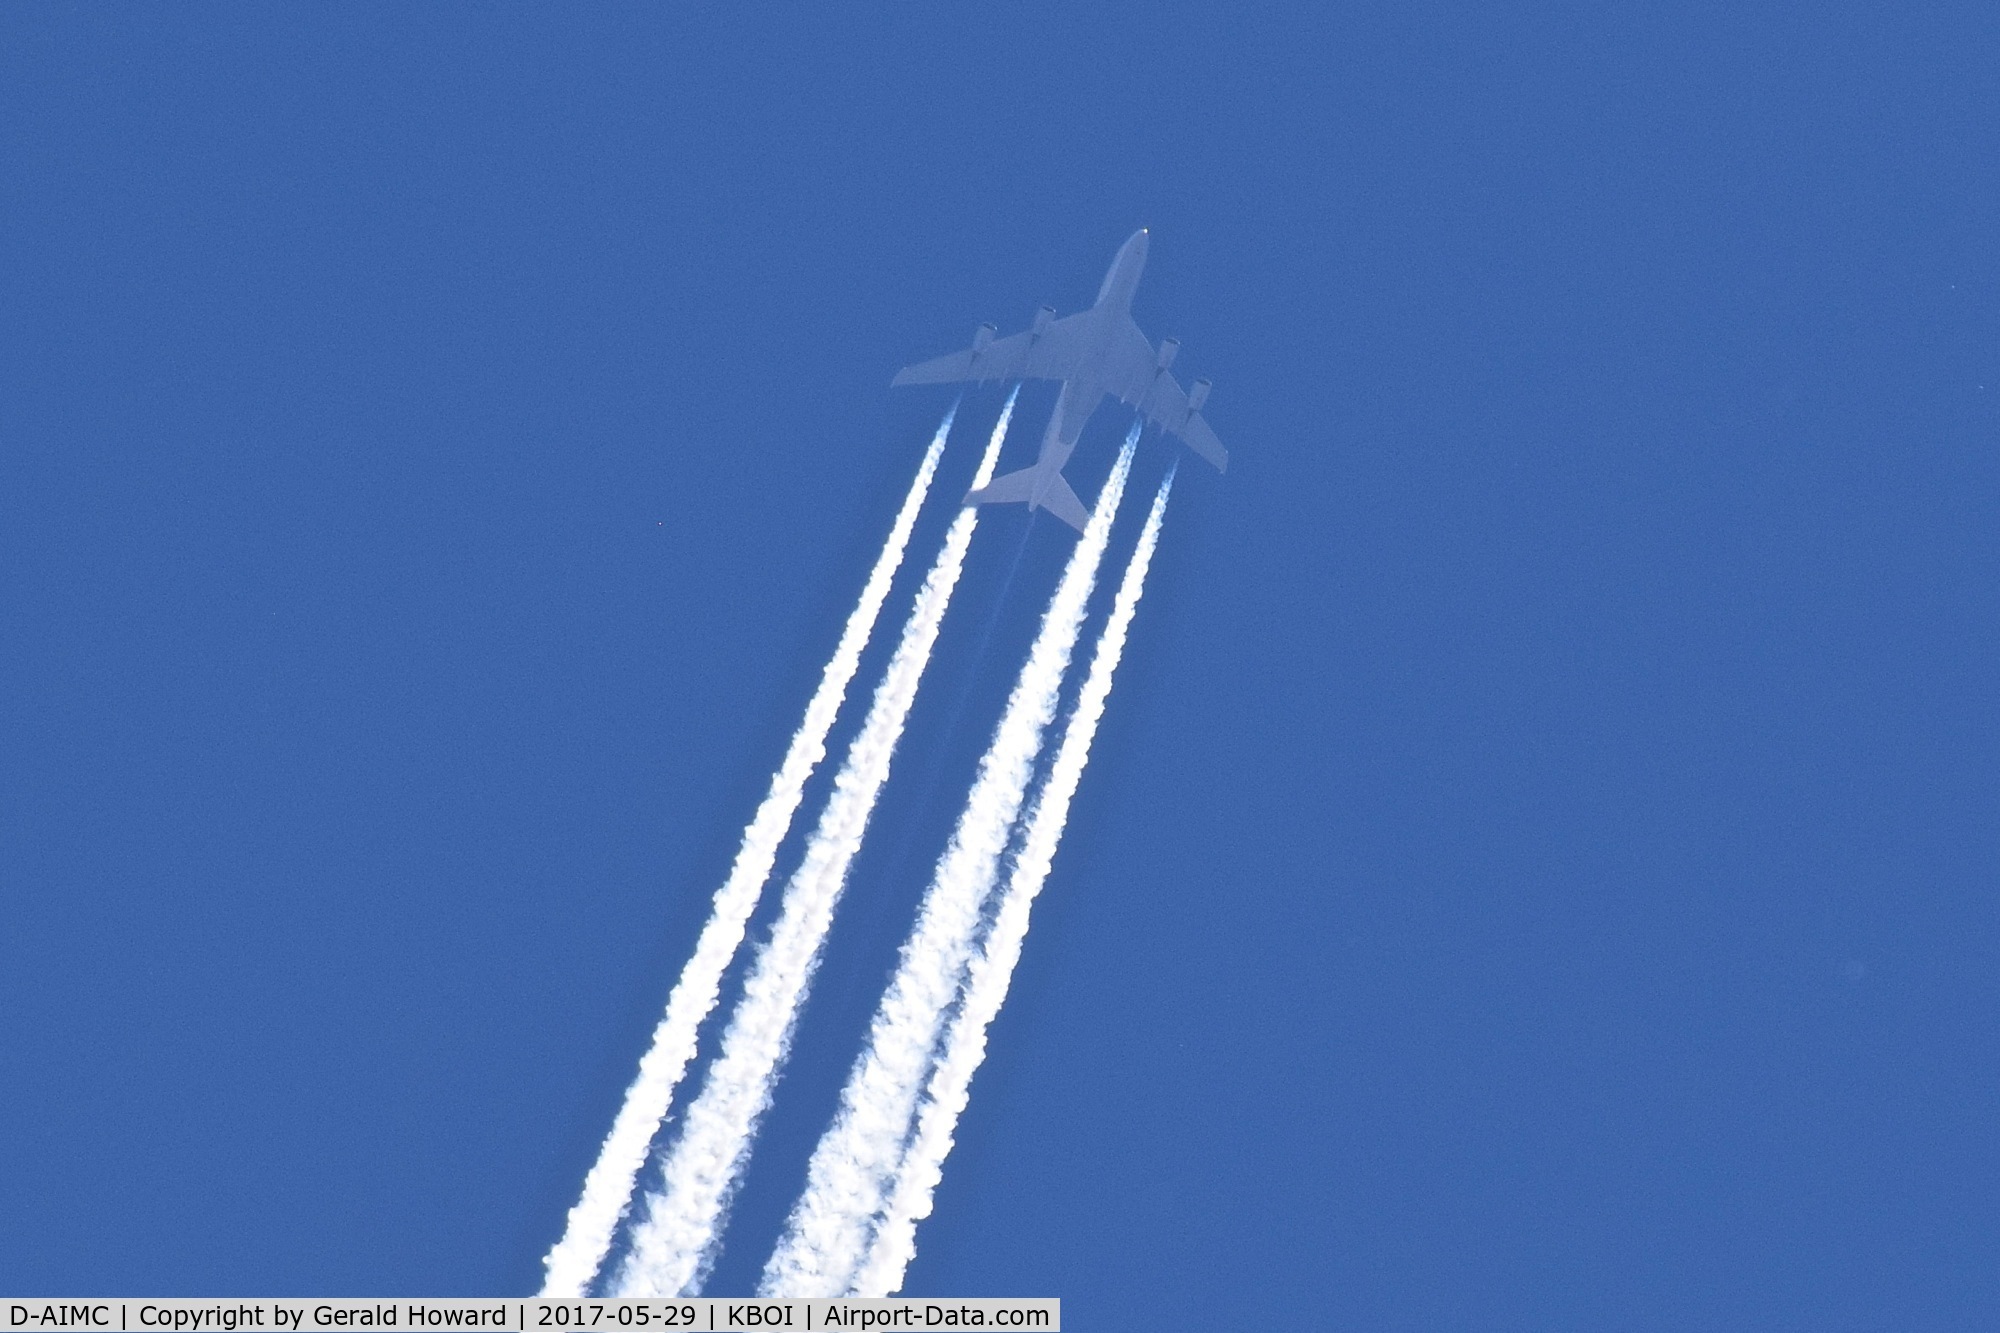 D-AIMC, 2010 Airbus A380-841 C/N 044, Over BOI at 40,000 feet. Lufthansa Flight 454, FRA to SFO